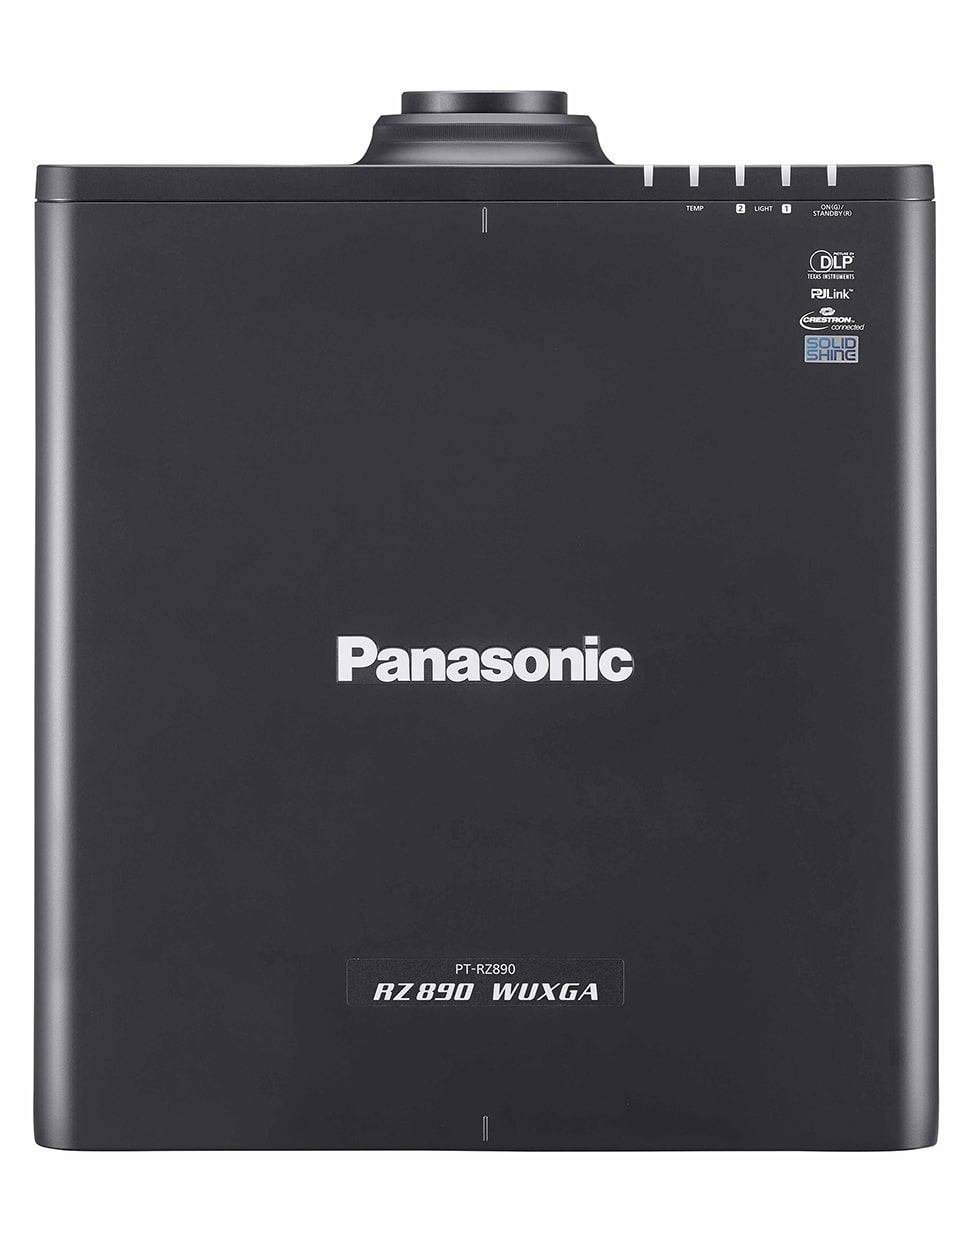 Лазерный проектор Panasonic PT-RZ890LB (без объектива)